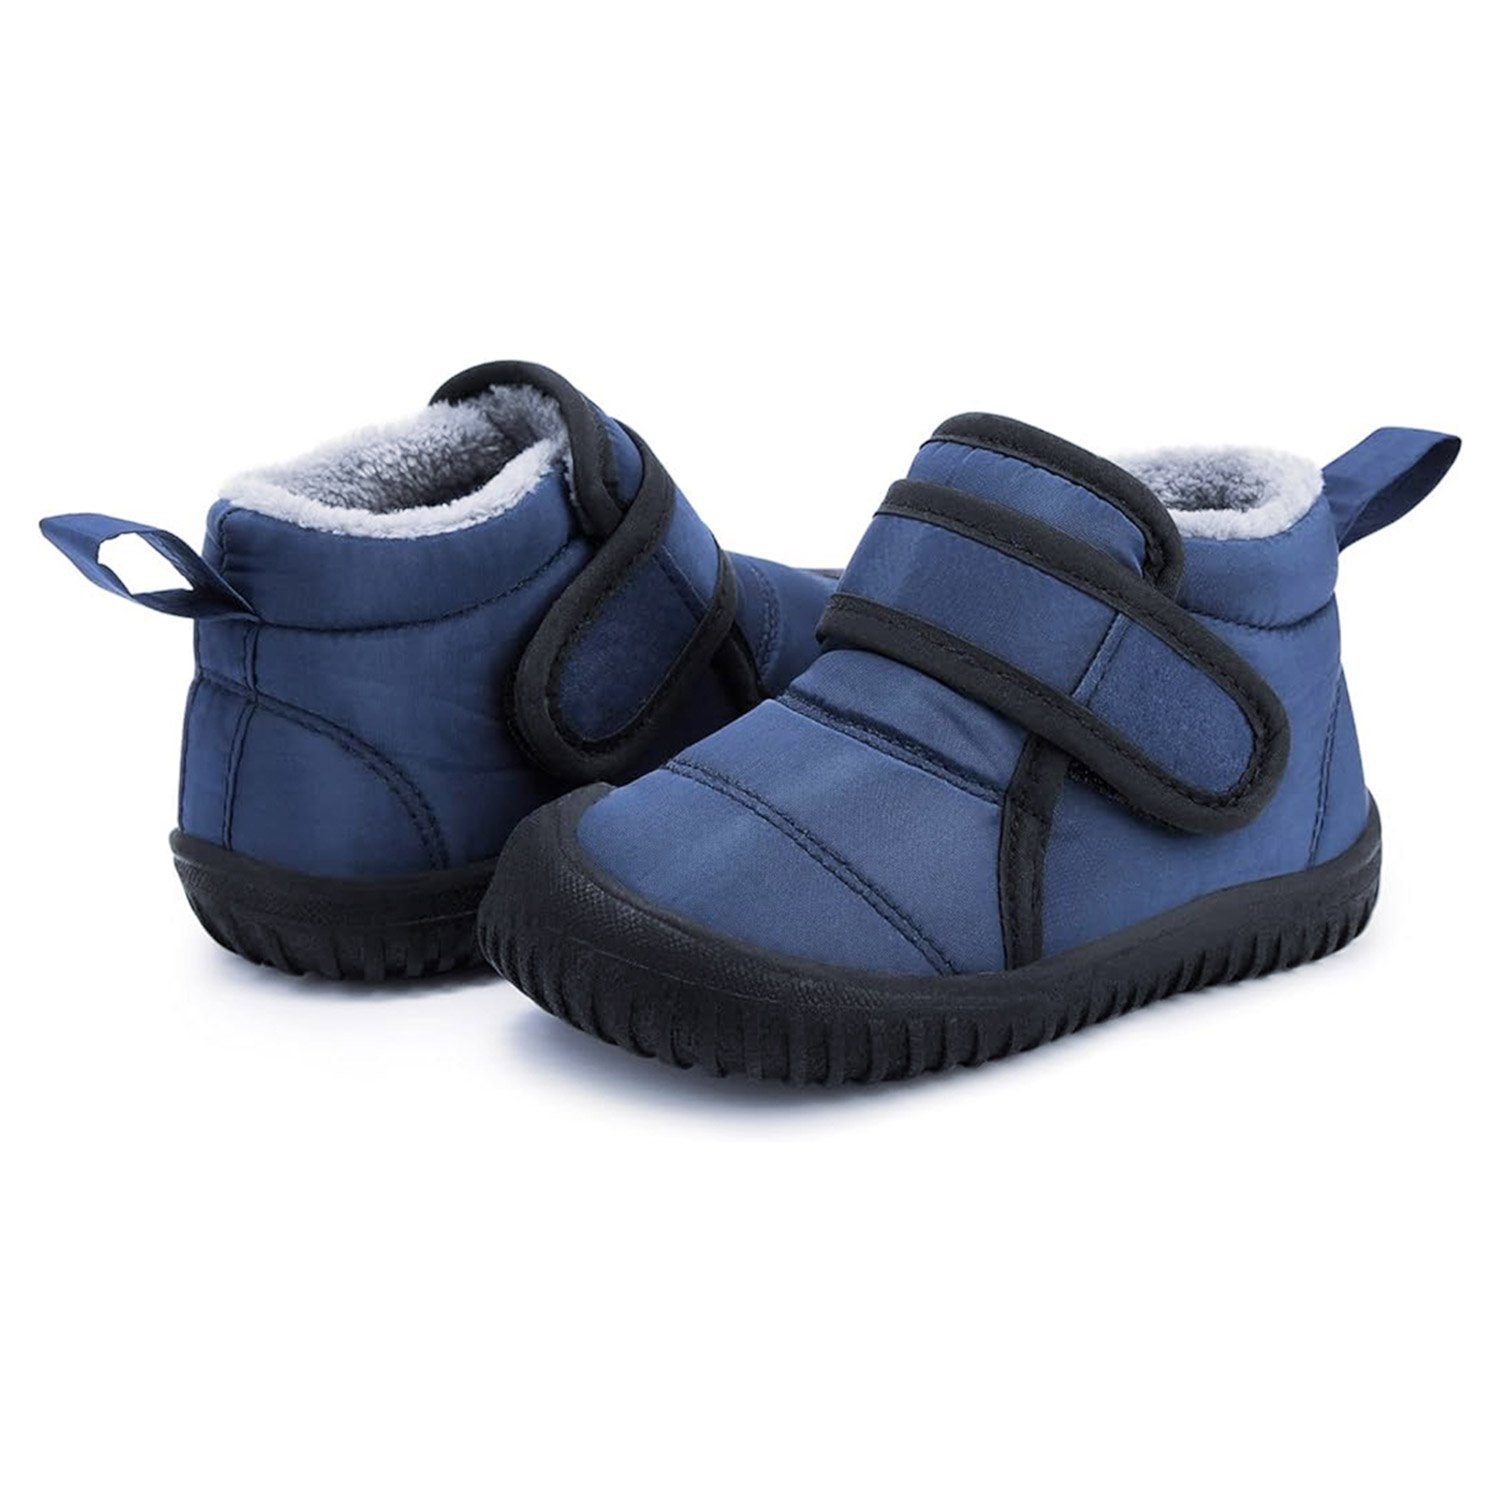 Daisred Leichte Kinderschuhe Warme Boots Bequem Stiefel Blau